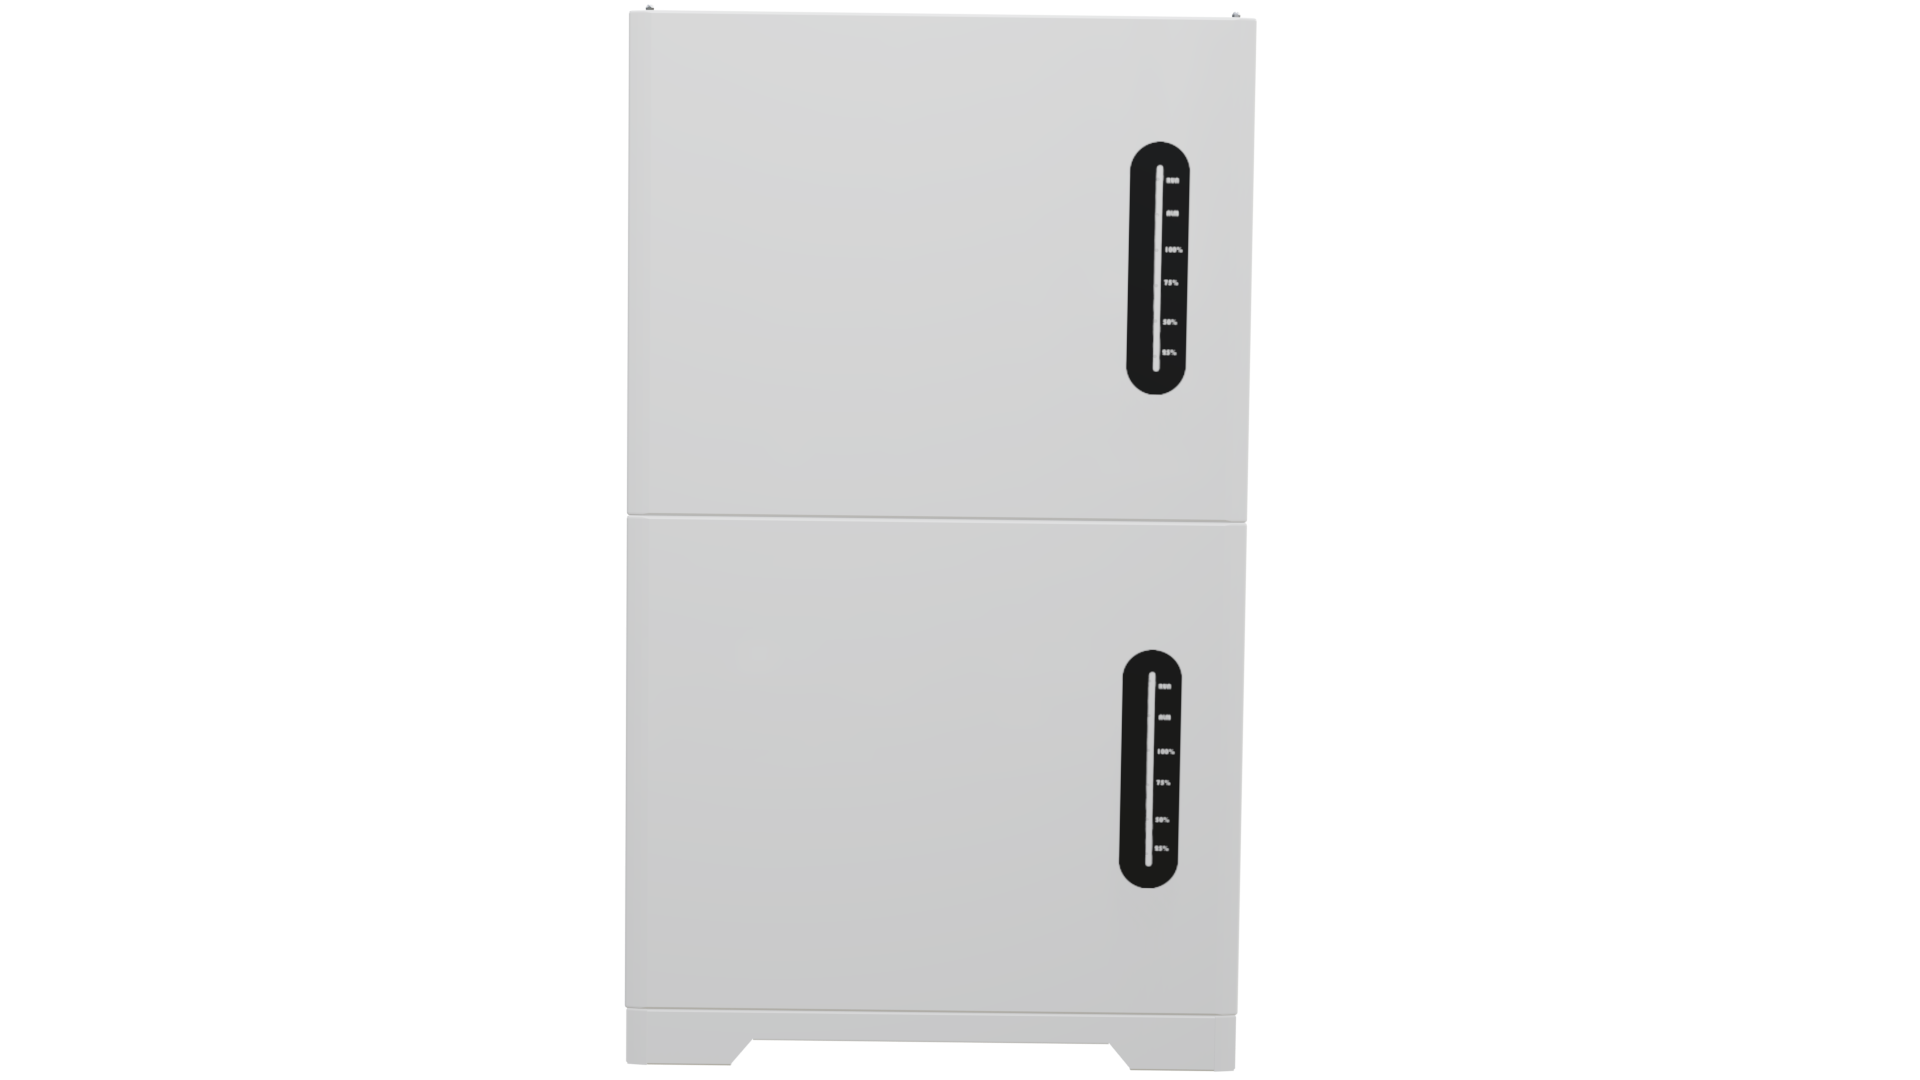 51.2V 100Ah Stack LiFePO4 Energy Storage System Battery